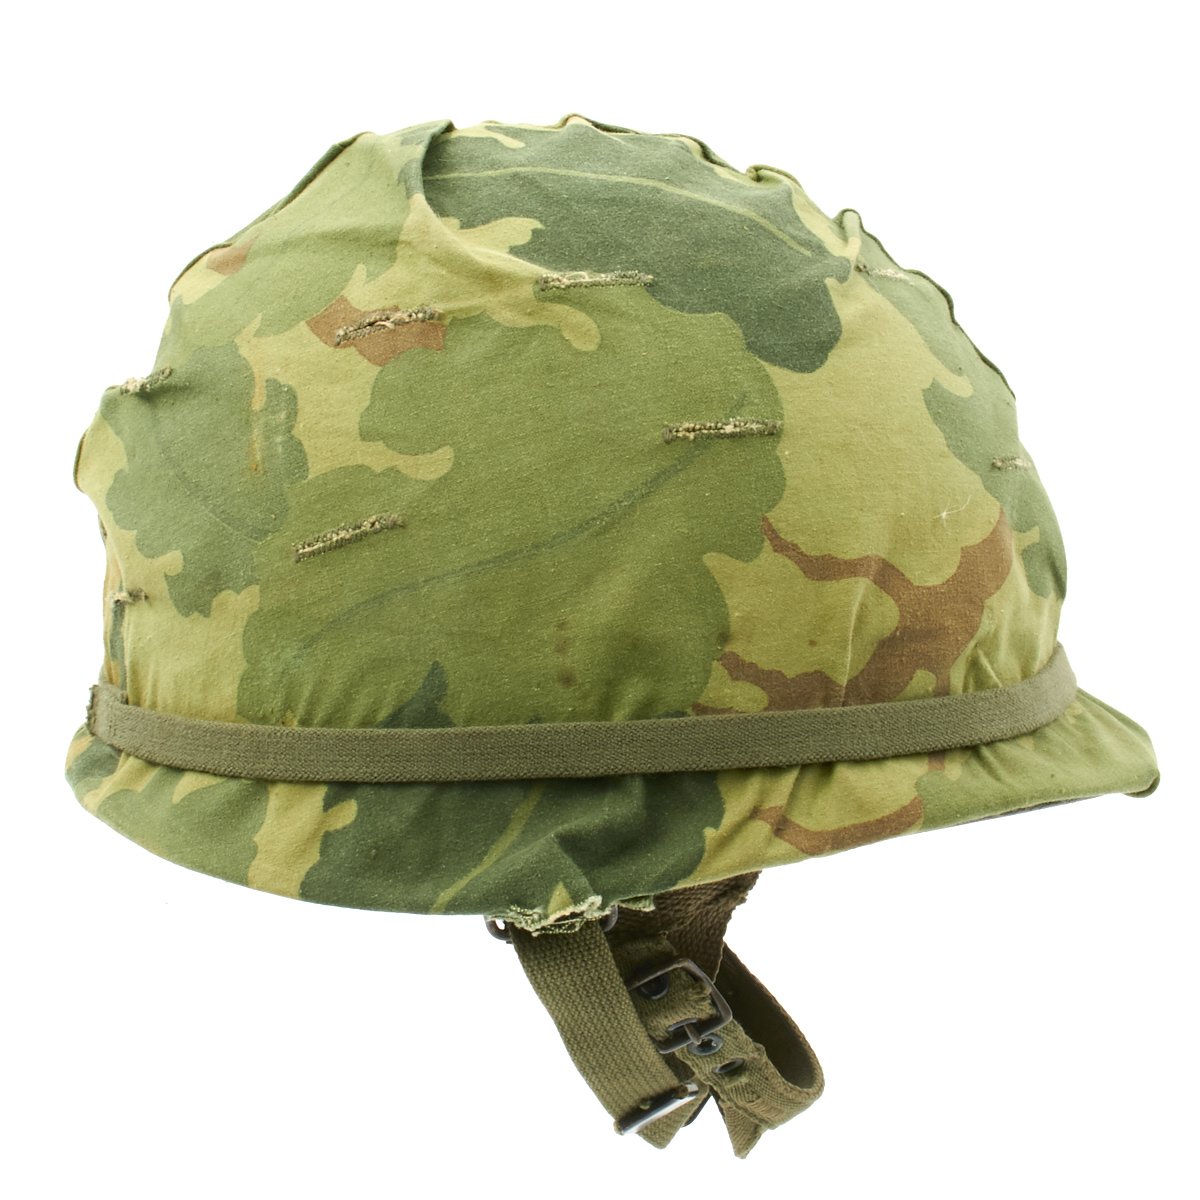 Original Us Wwii Vietnam War M1 Paratrooper Helmet With 1966 Dated